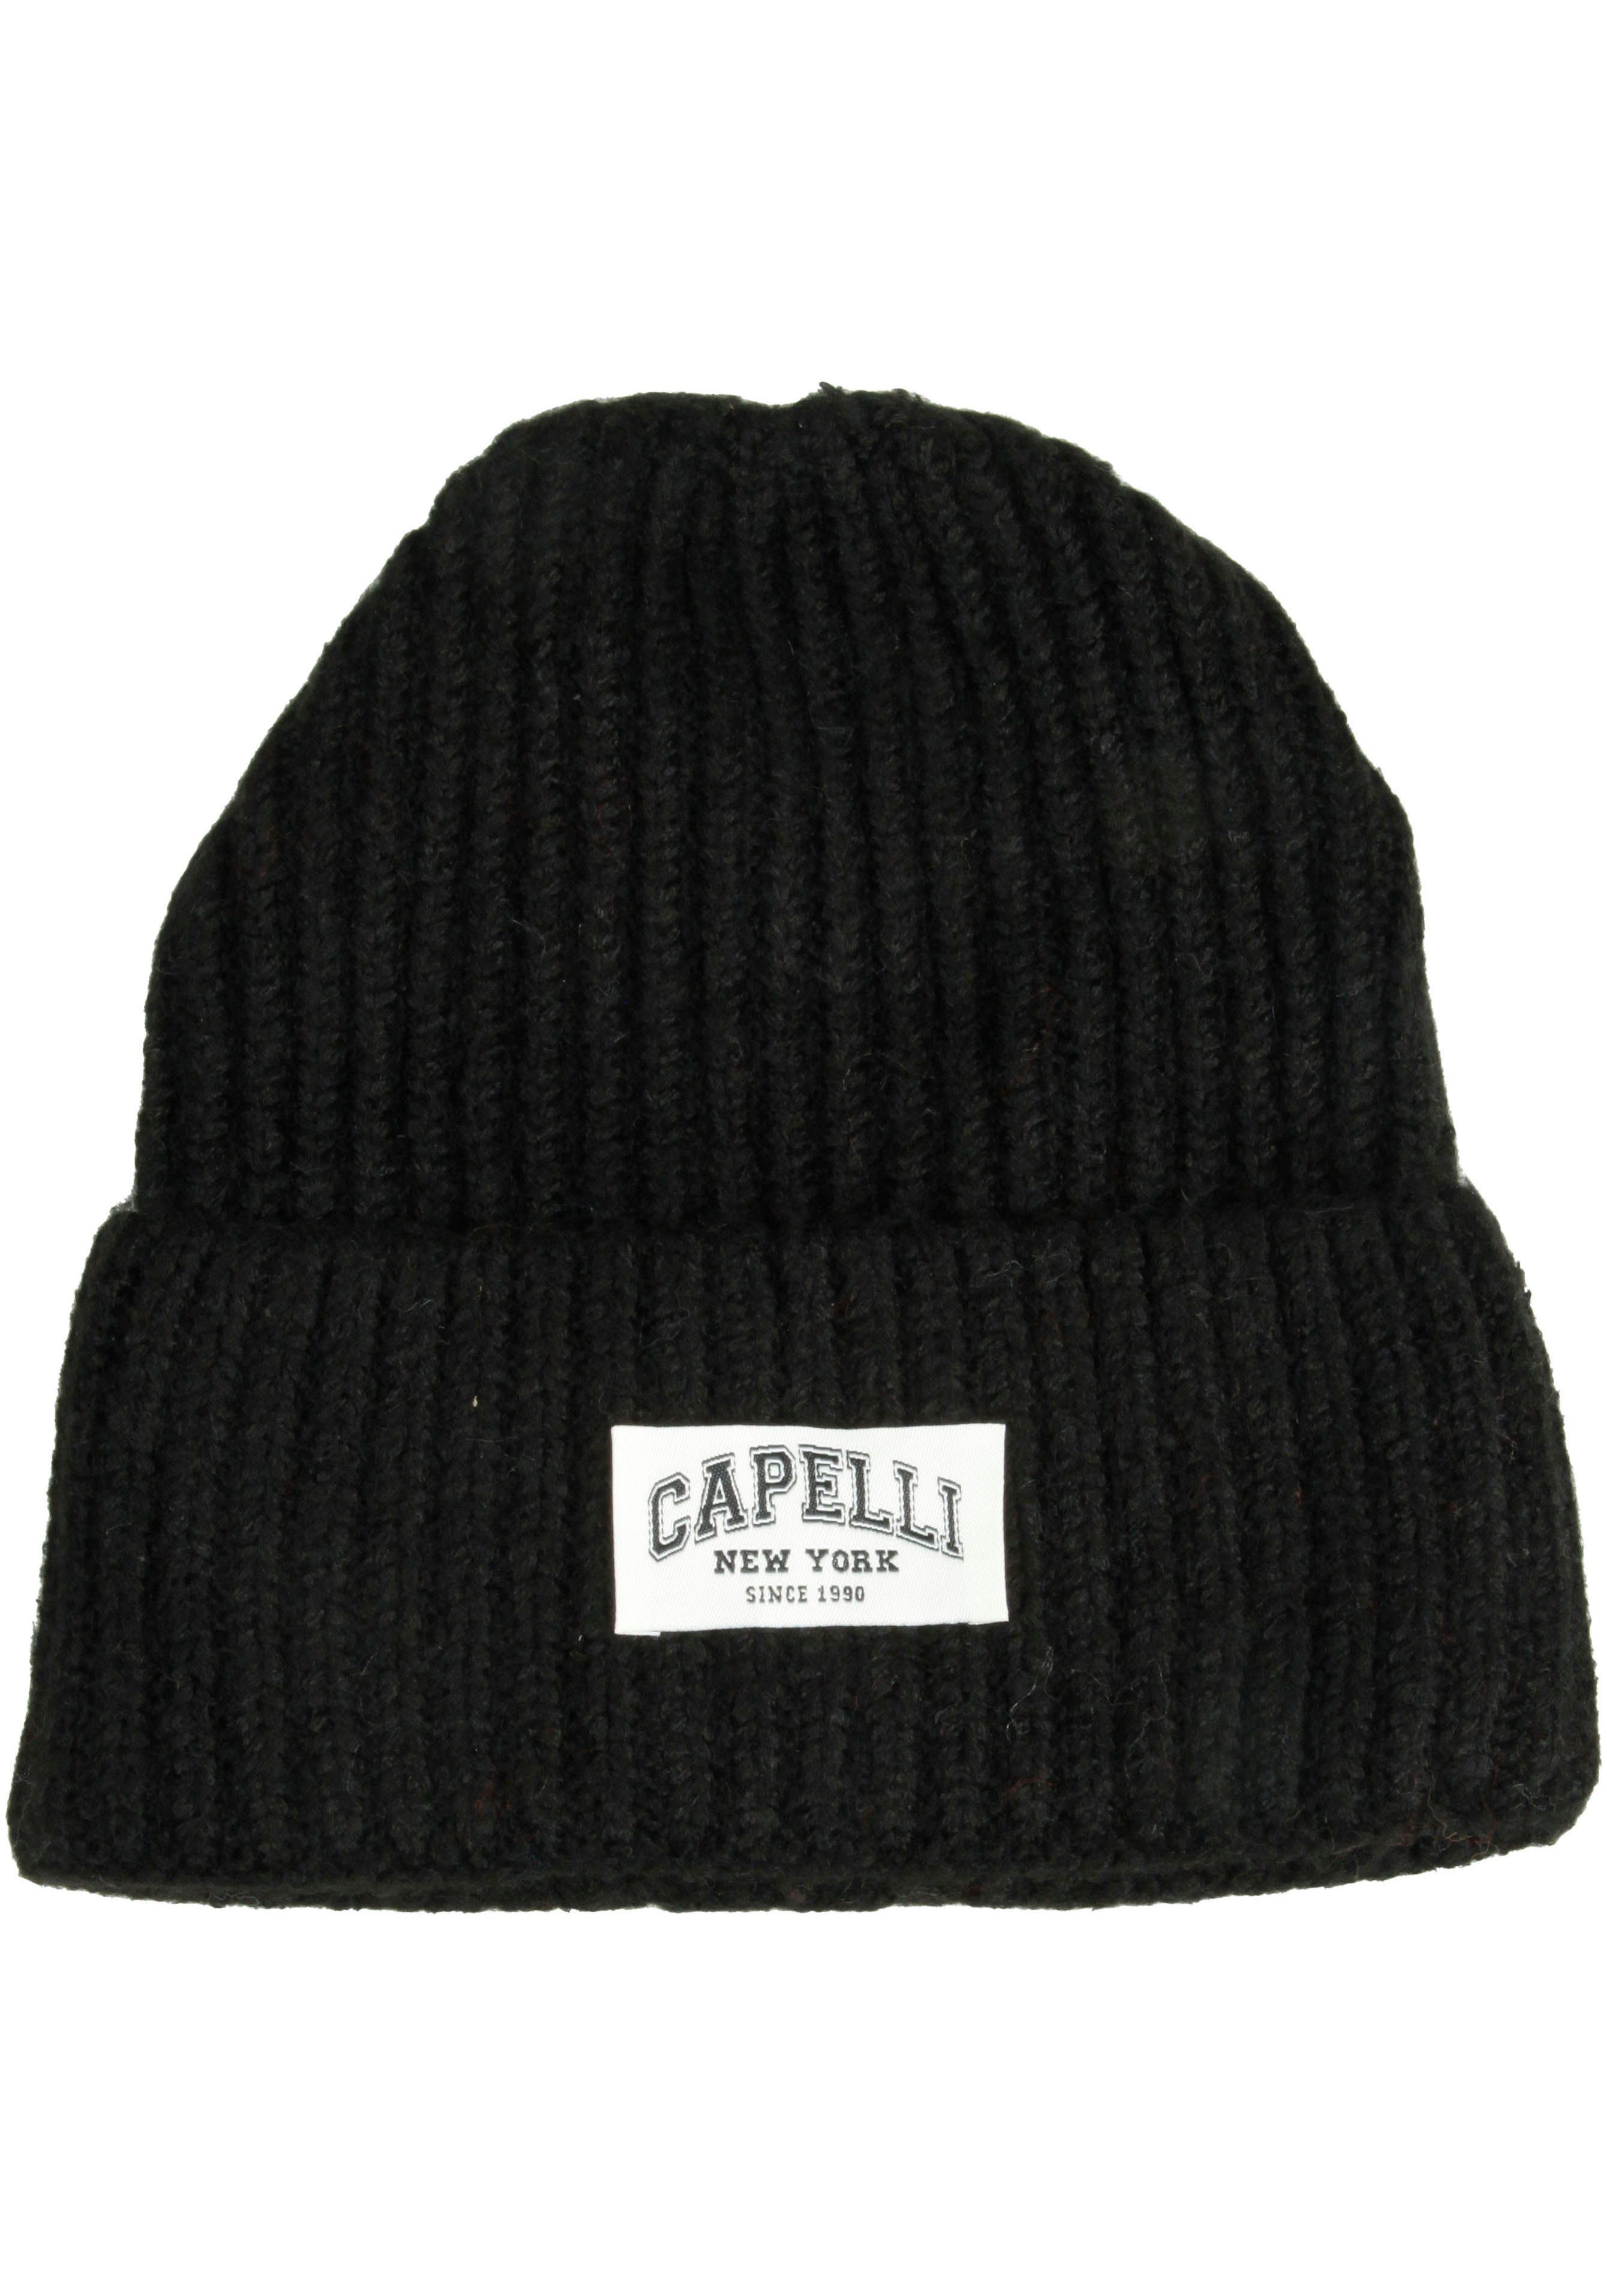 Capelli New York Strickmütze Breiter Umschalg, Logo vorn schwarz